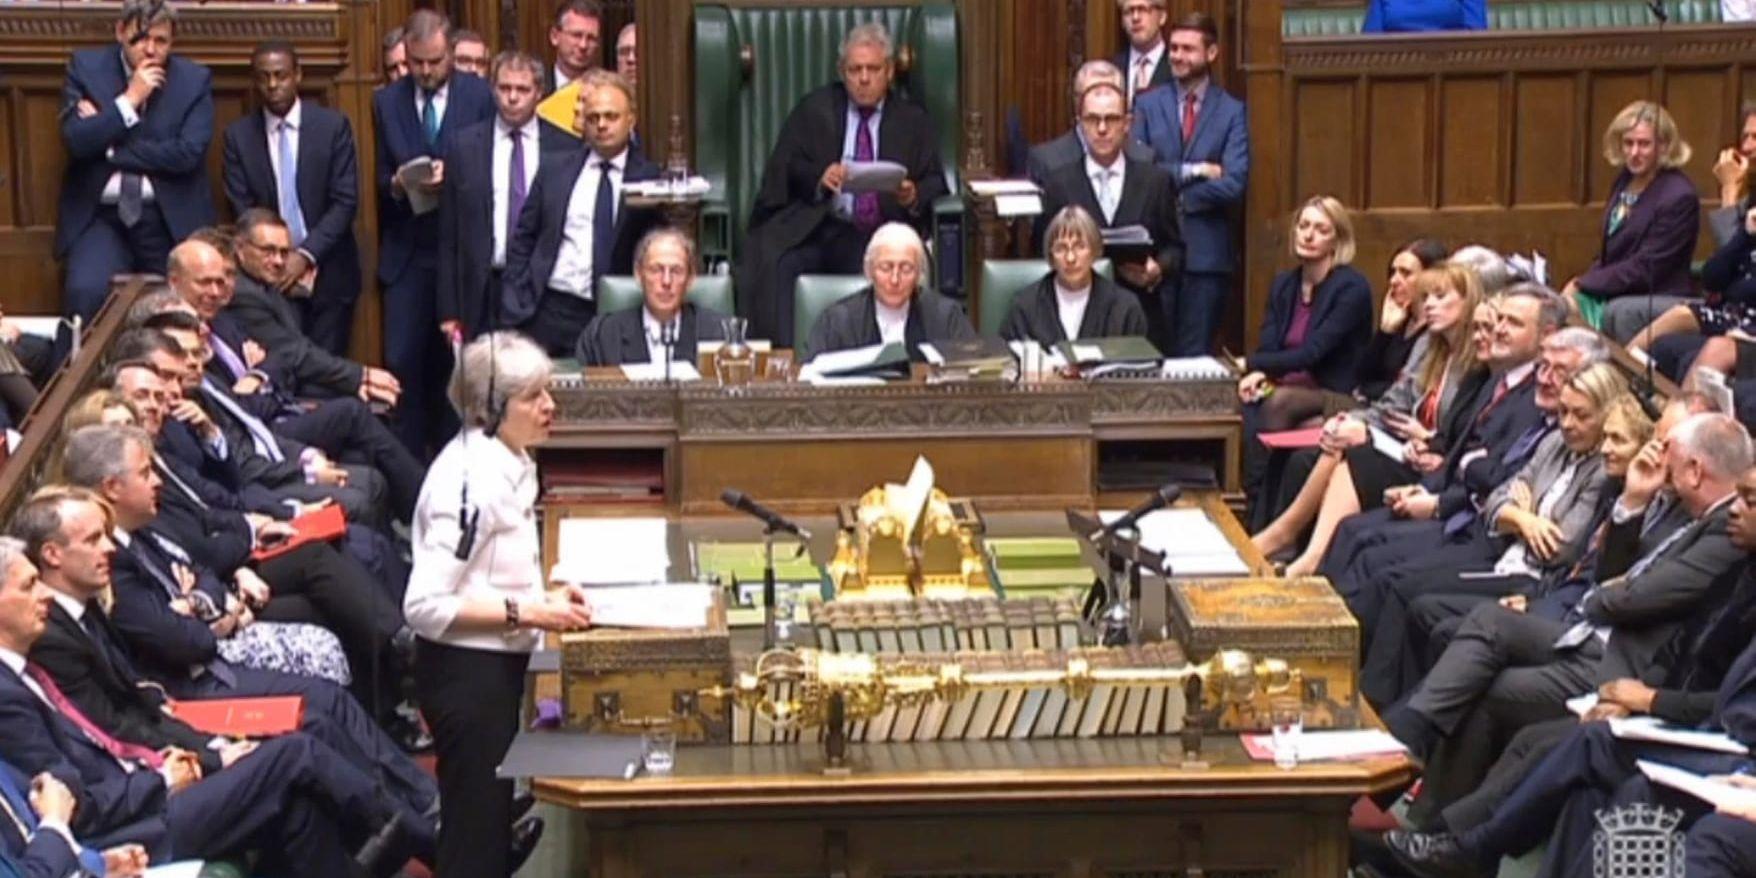 Storbritanniens premiärminister Theresa May talar om brexitläget i det brittiska parlamentet.